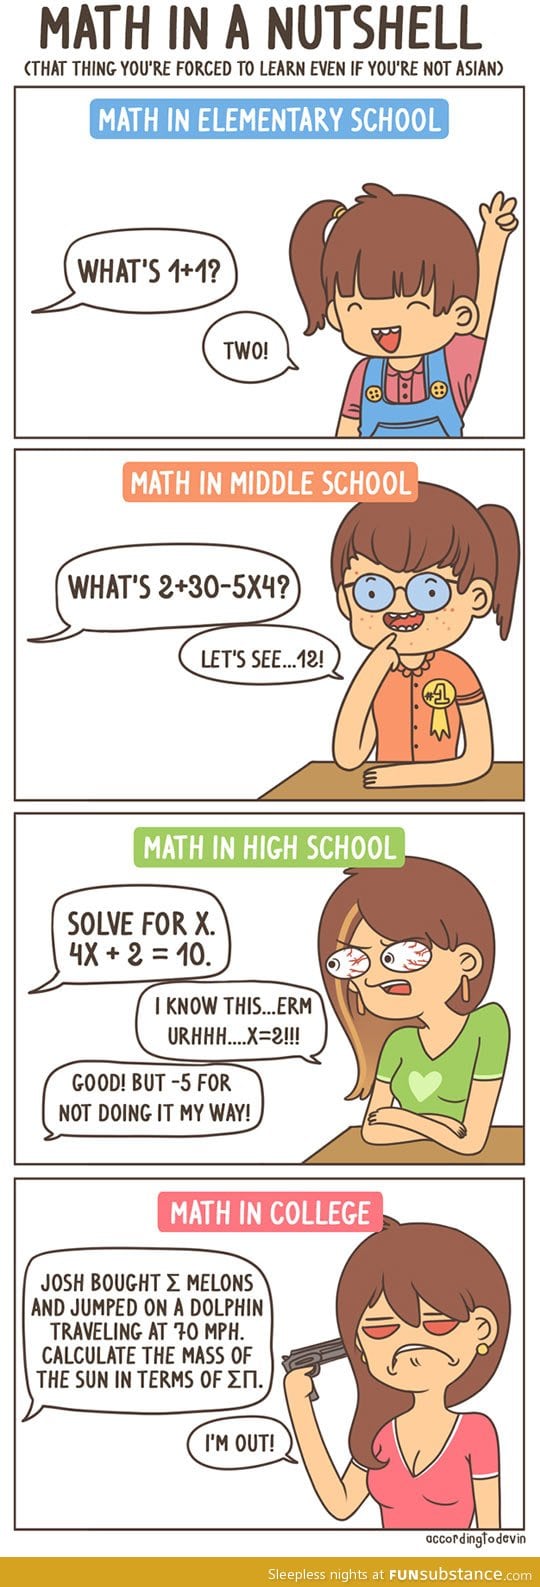 Math in a nutshell